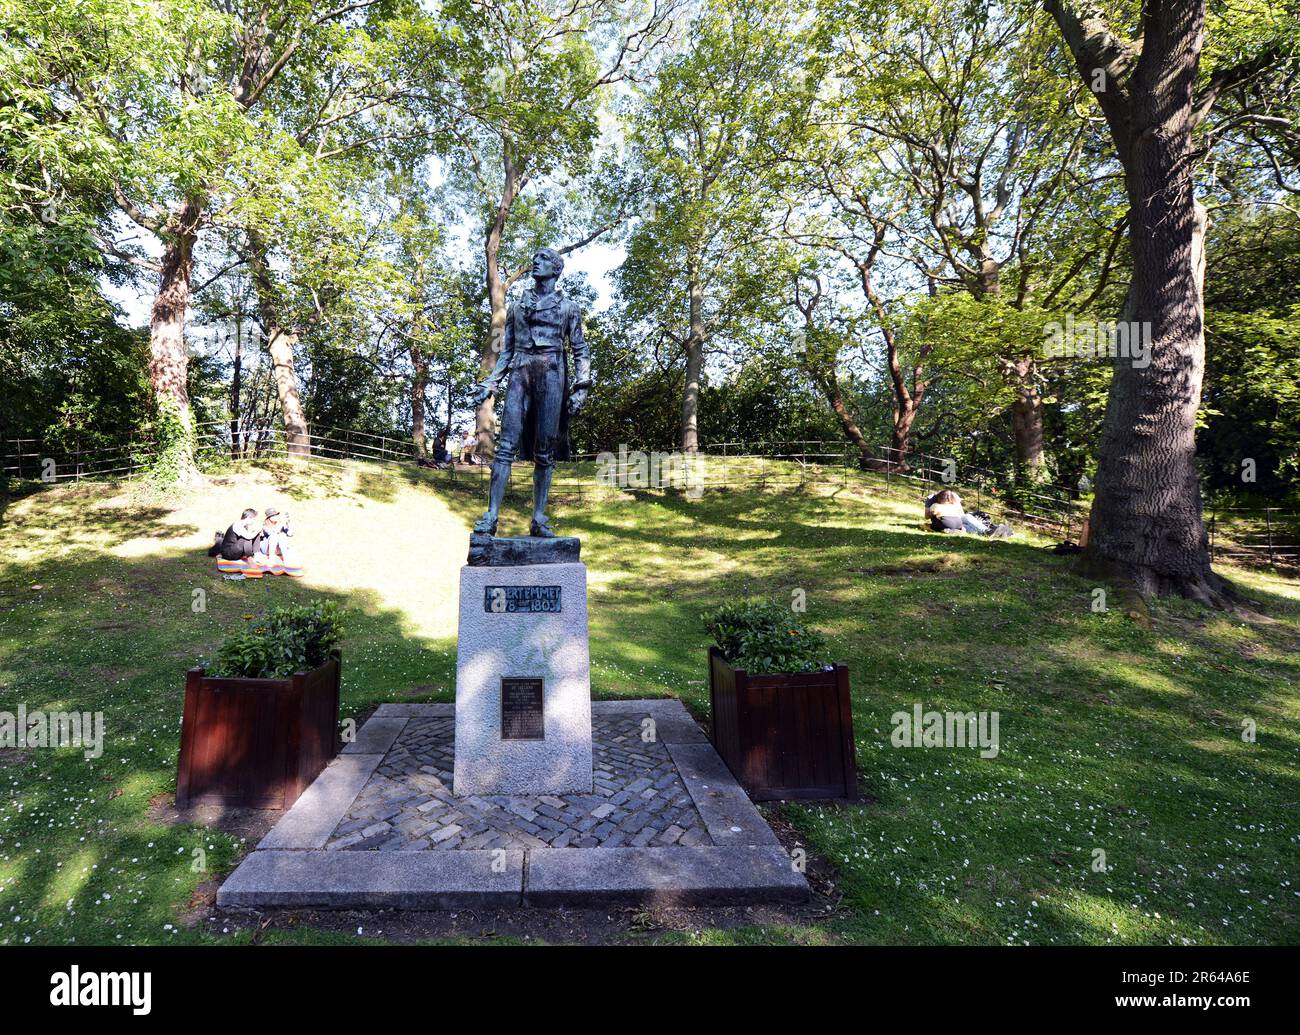 Estatua de Robert Emmet en el parque St Stephen's Green en Dublín, Irlanda. Foto de stock